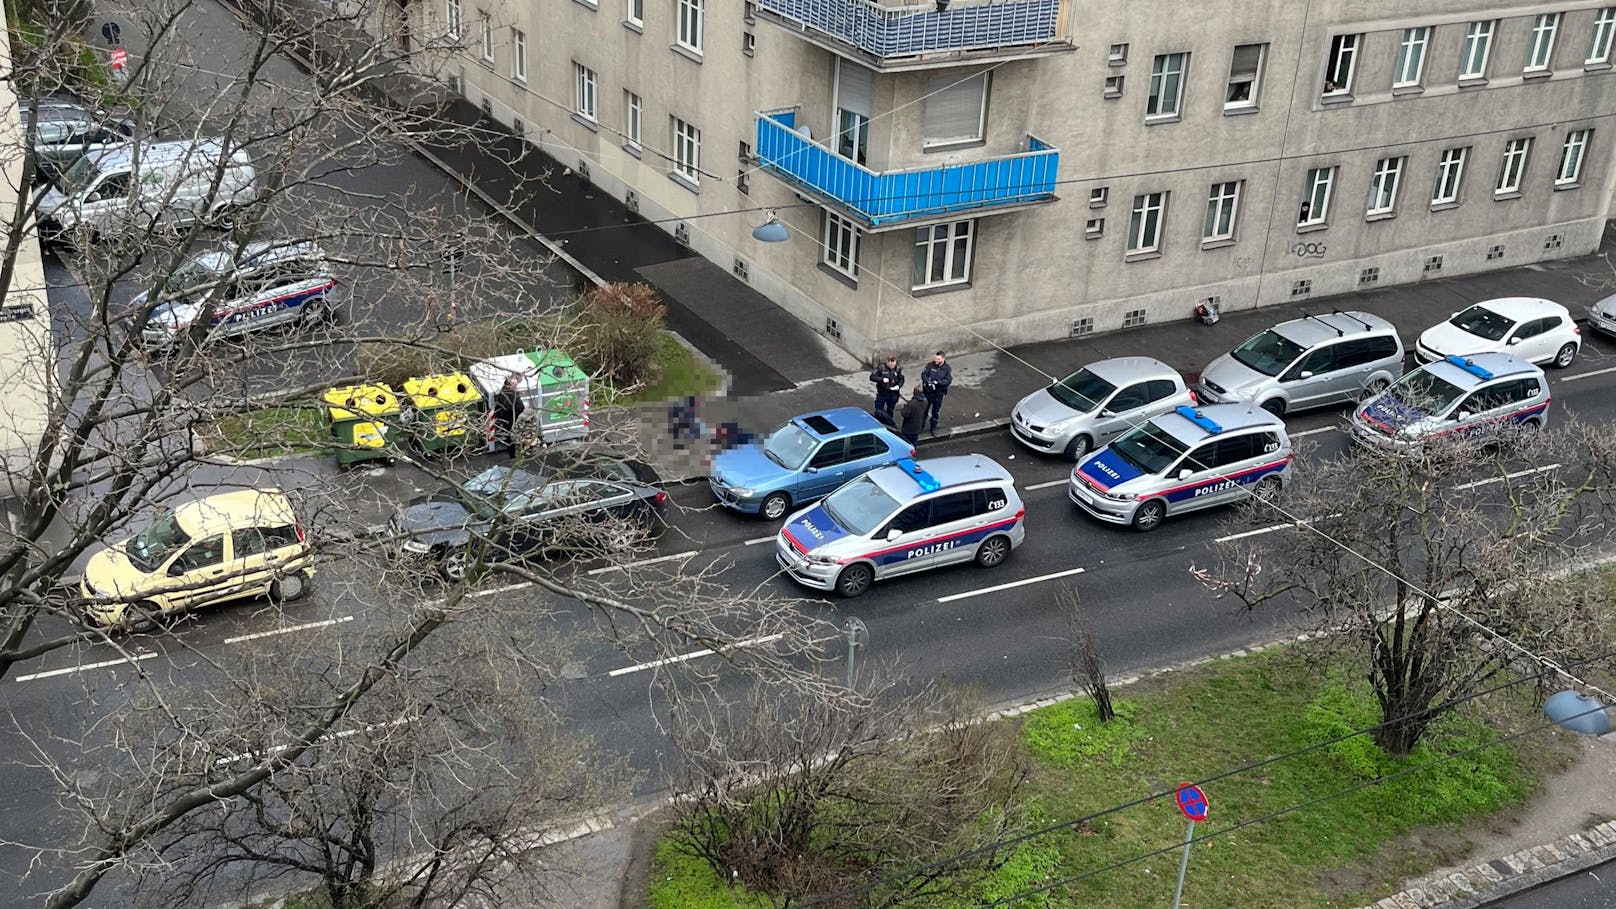 Polizei-Einsatz am frühen Samstag in Wien-Favoriten!